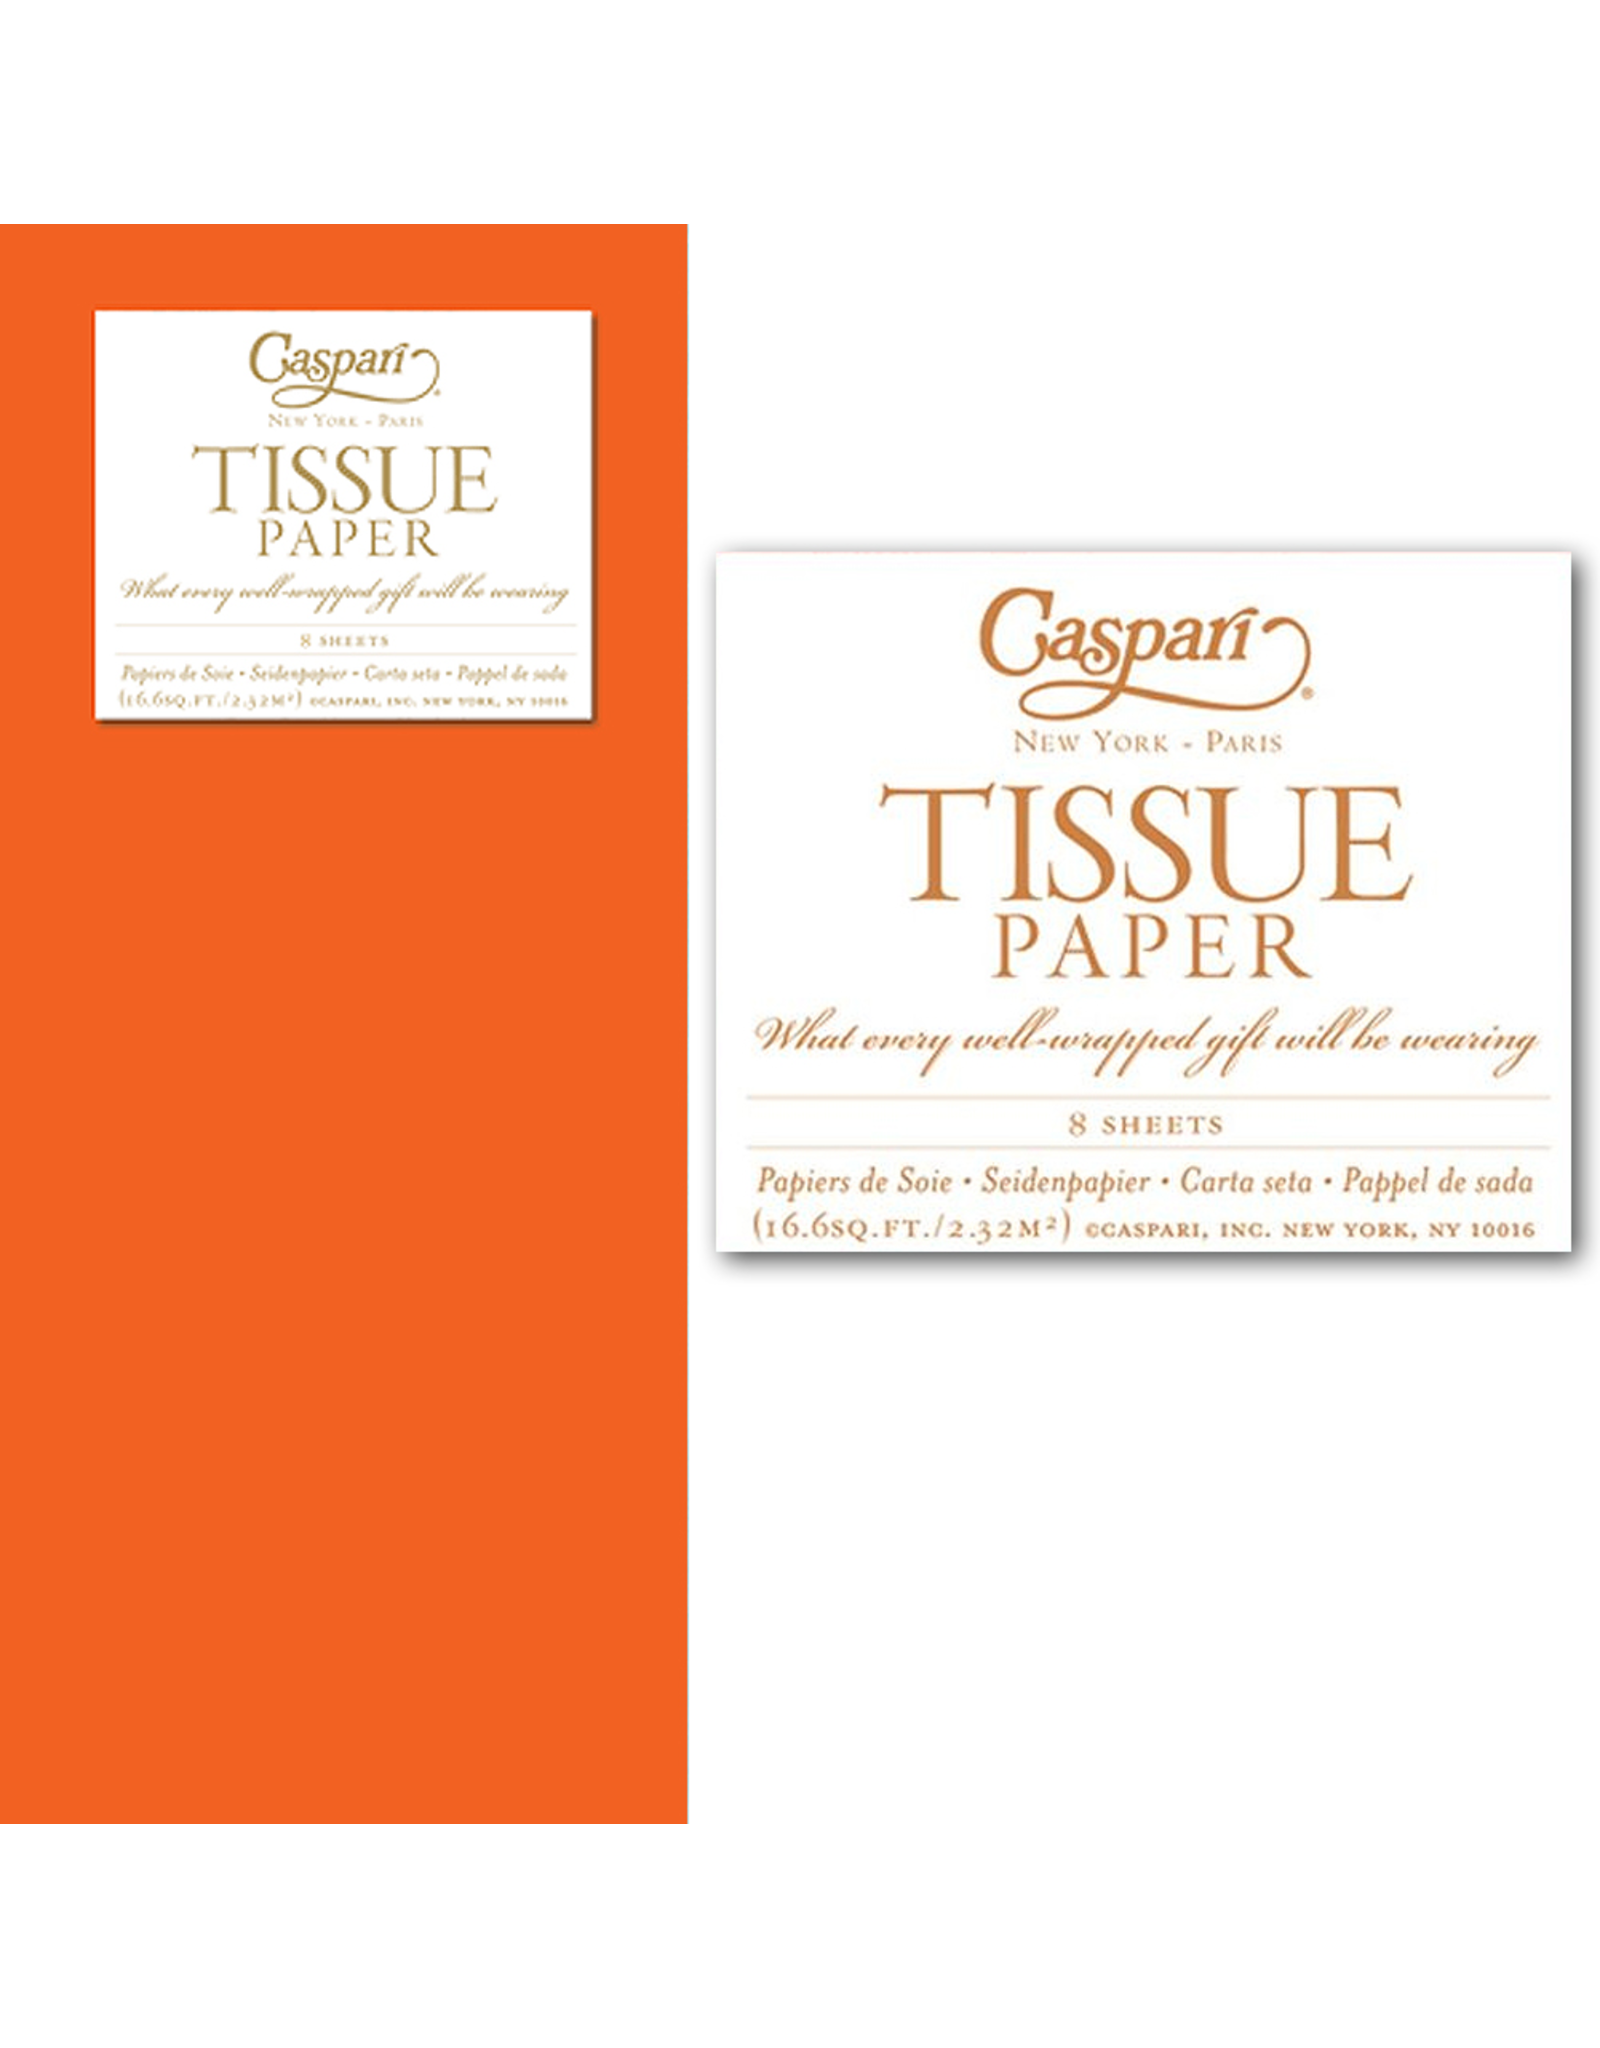 Caspari Gift Tissue Paper 8 Sheets Orange